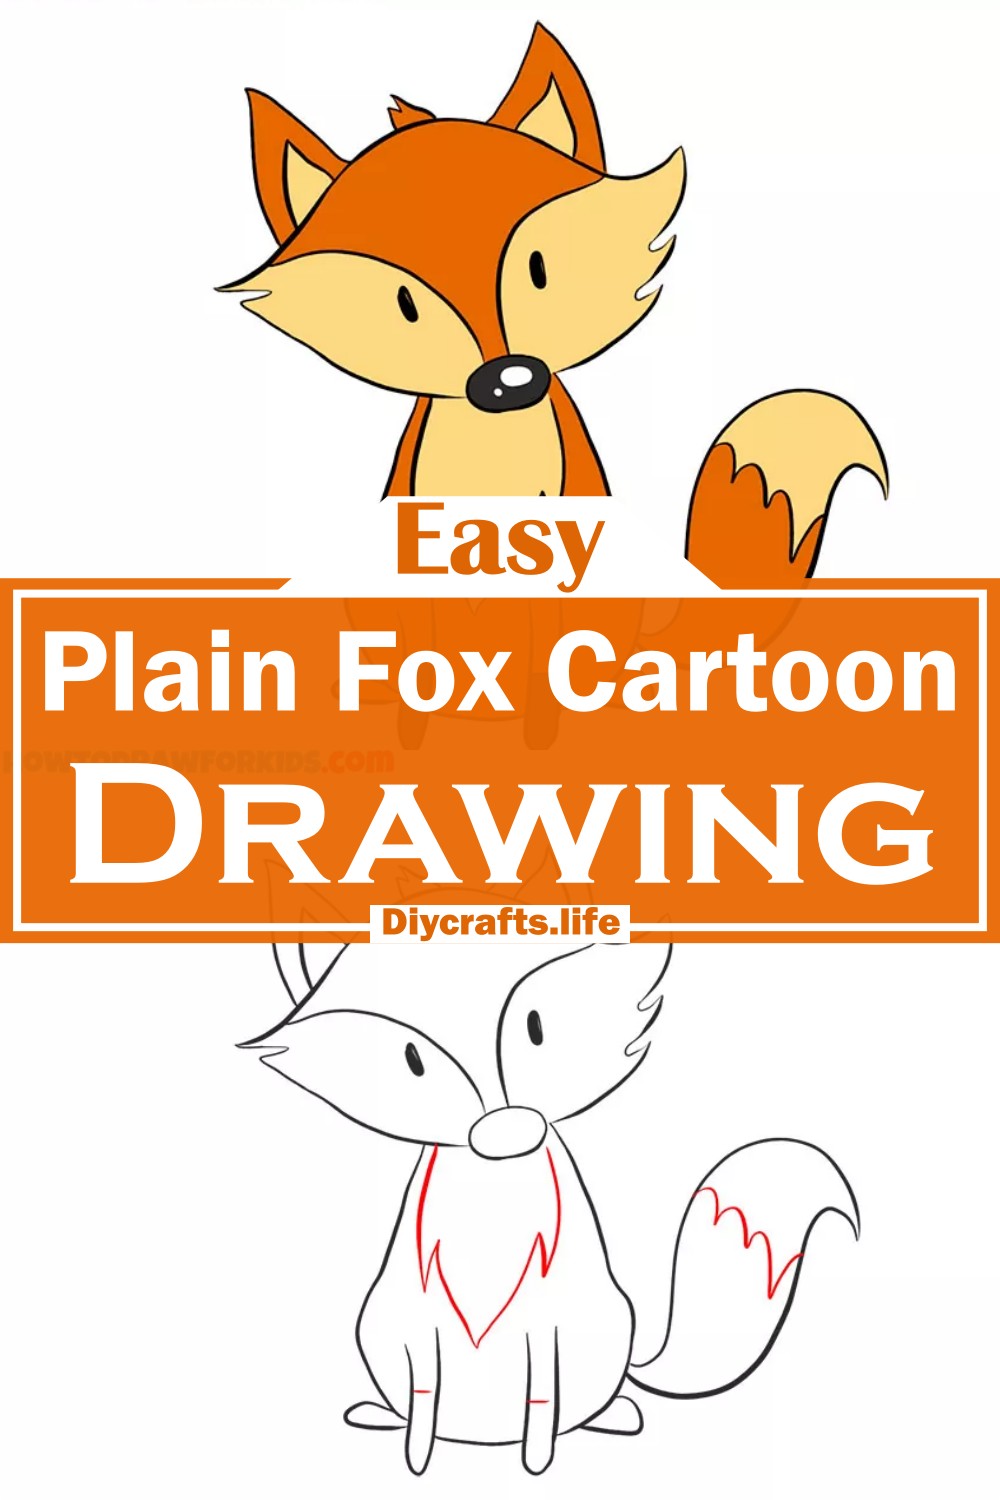 Plain Fox Cartoon Drawing